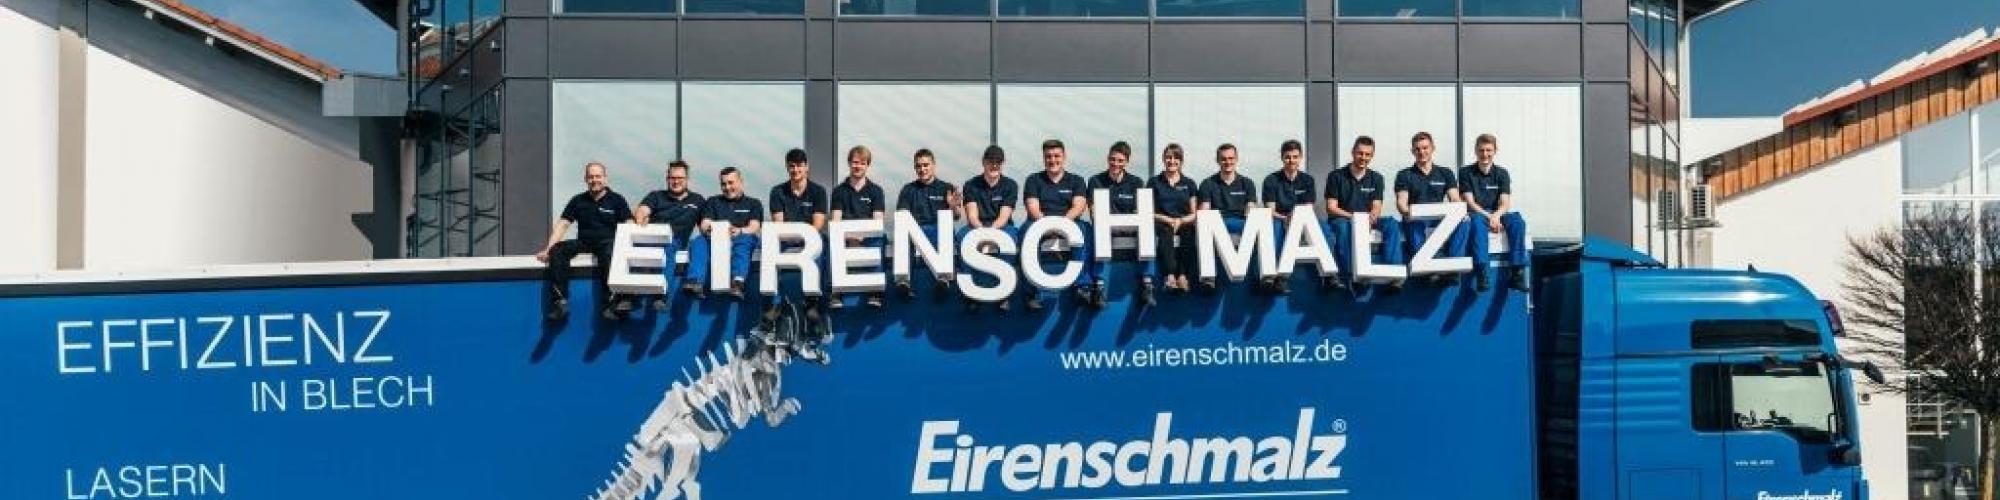 Eirenschmalz Maschinenbaumechanik und Metallbau GmbH